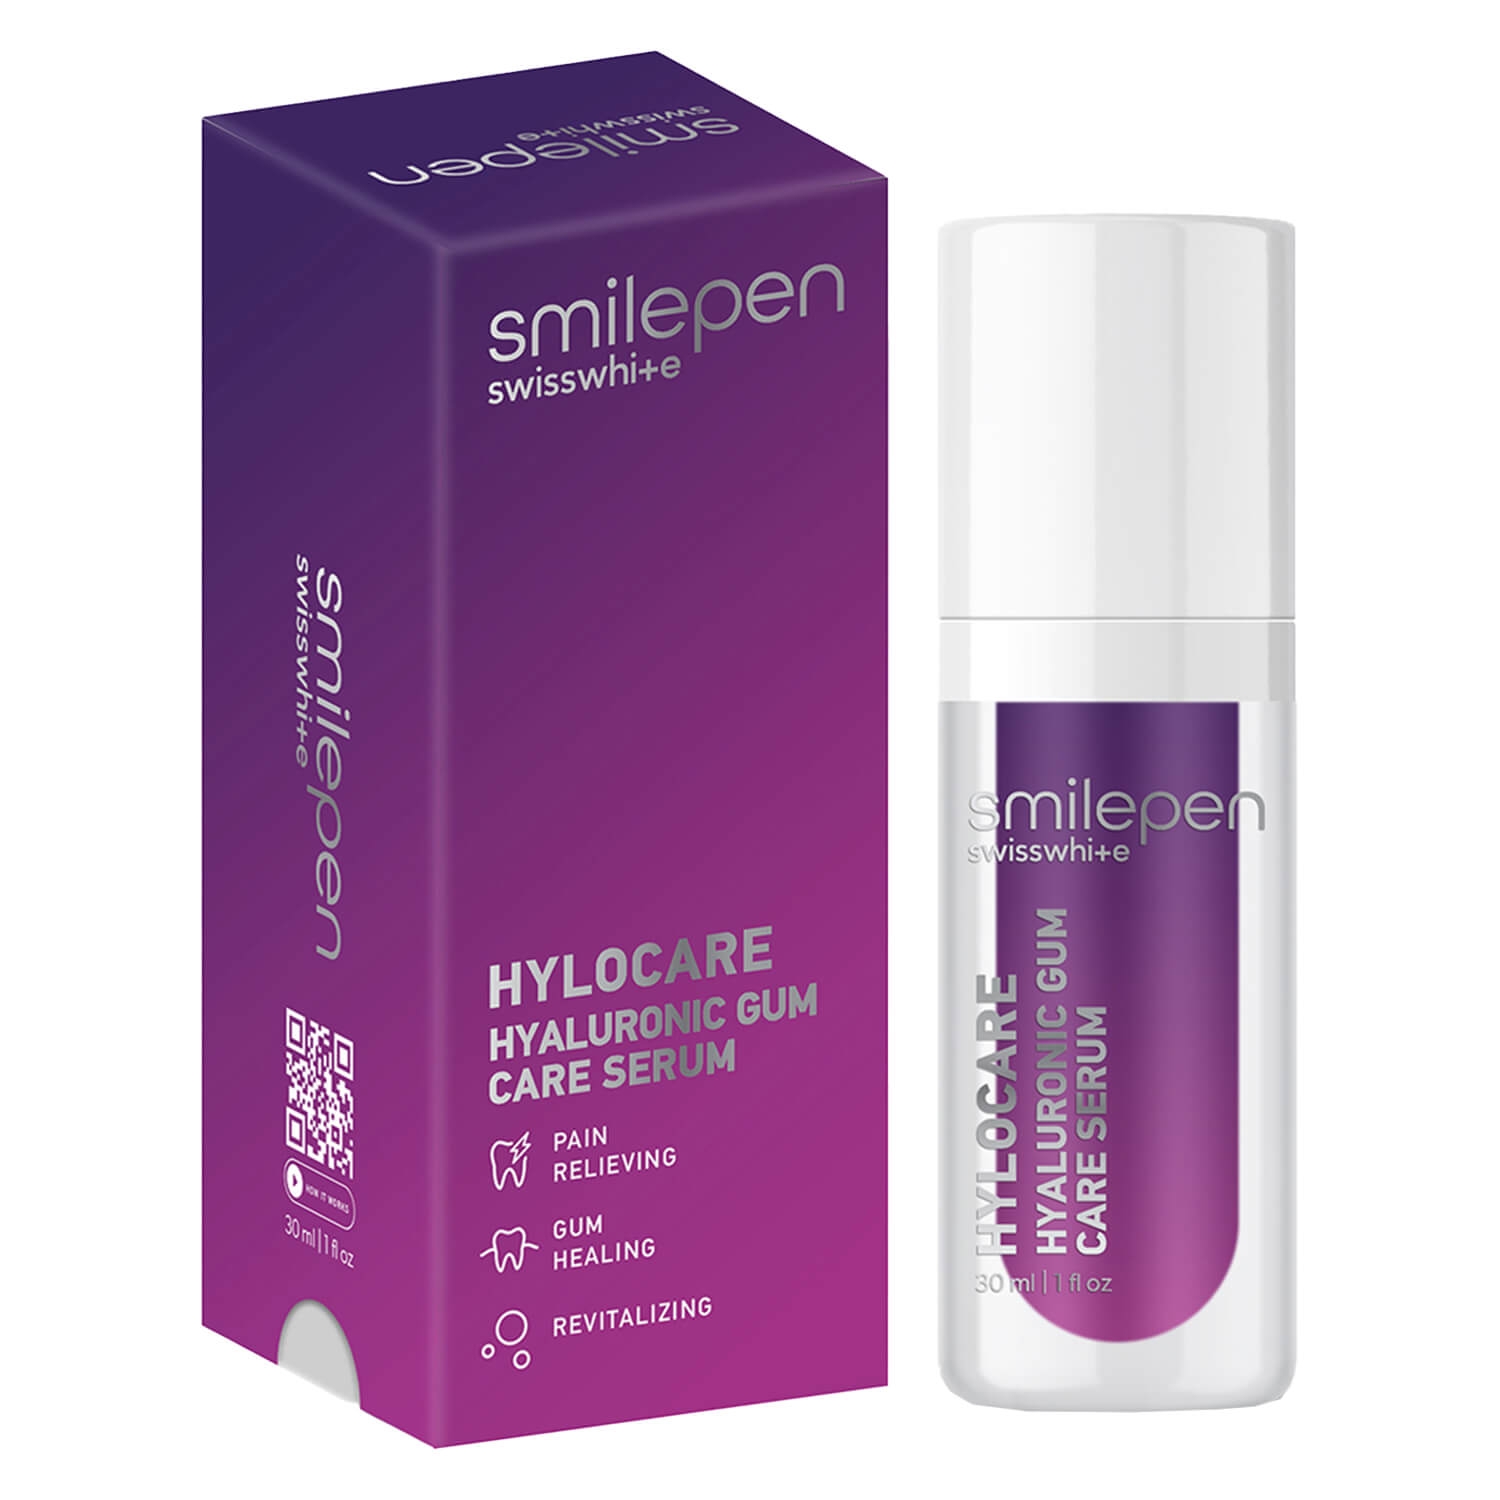 Produktbild von smilepen - Hyaluronic Gum Care Serum